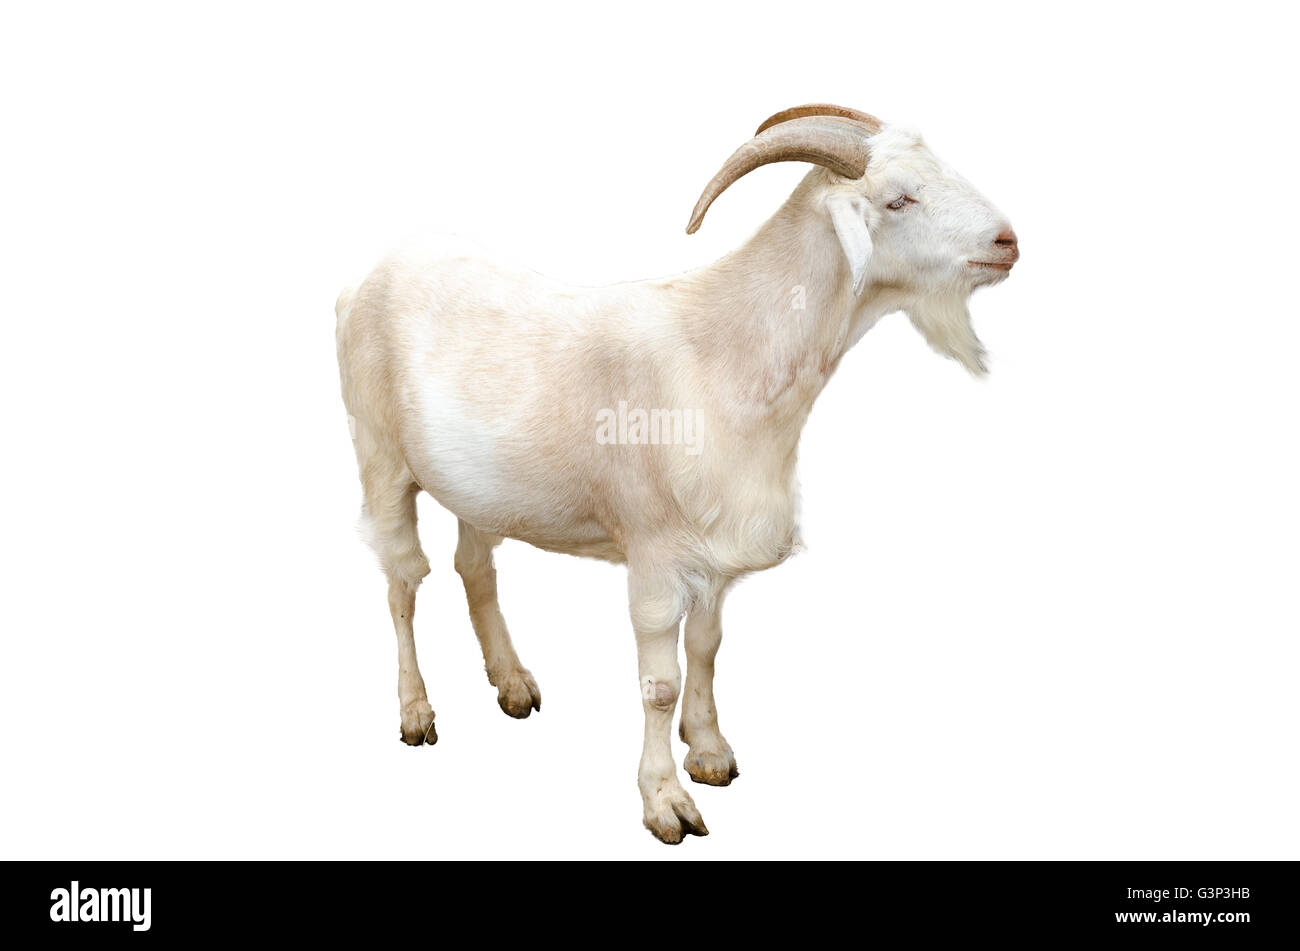 Portrait de chèvre blanc close-up, isolé sur fond blanc. Banque D'Images